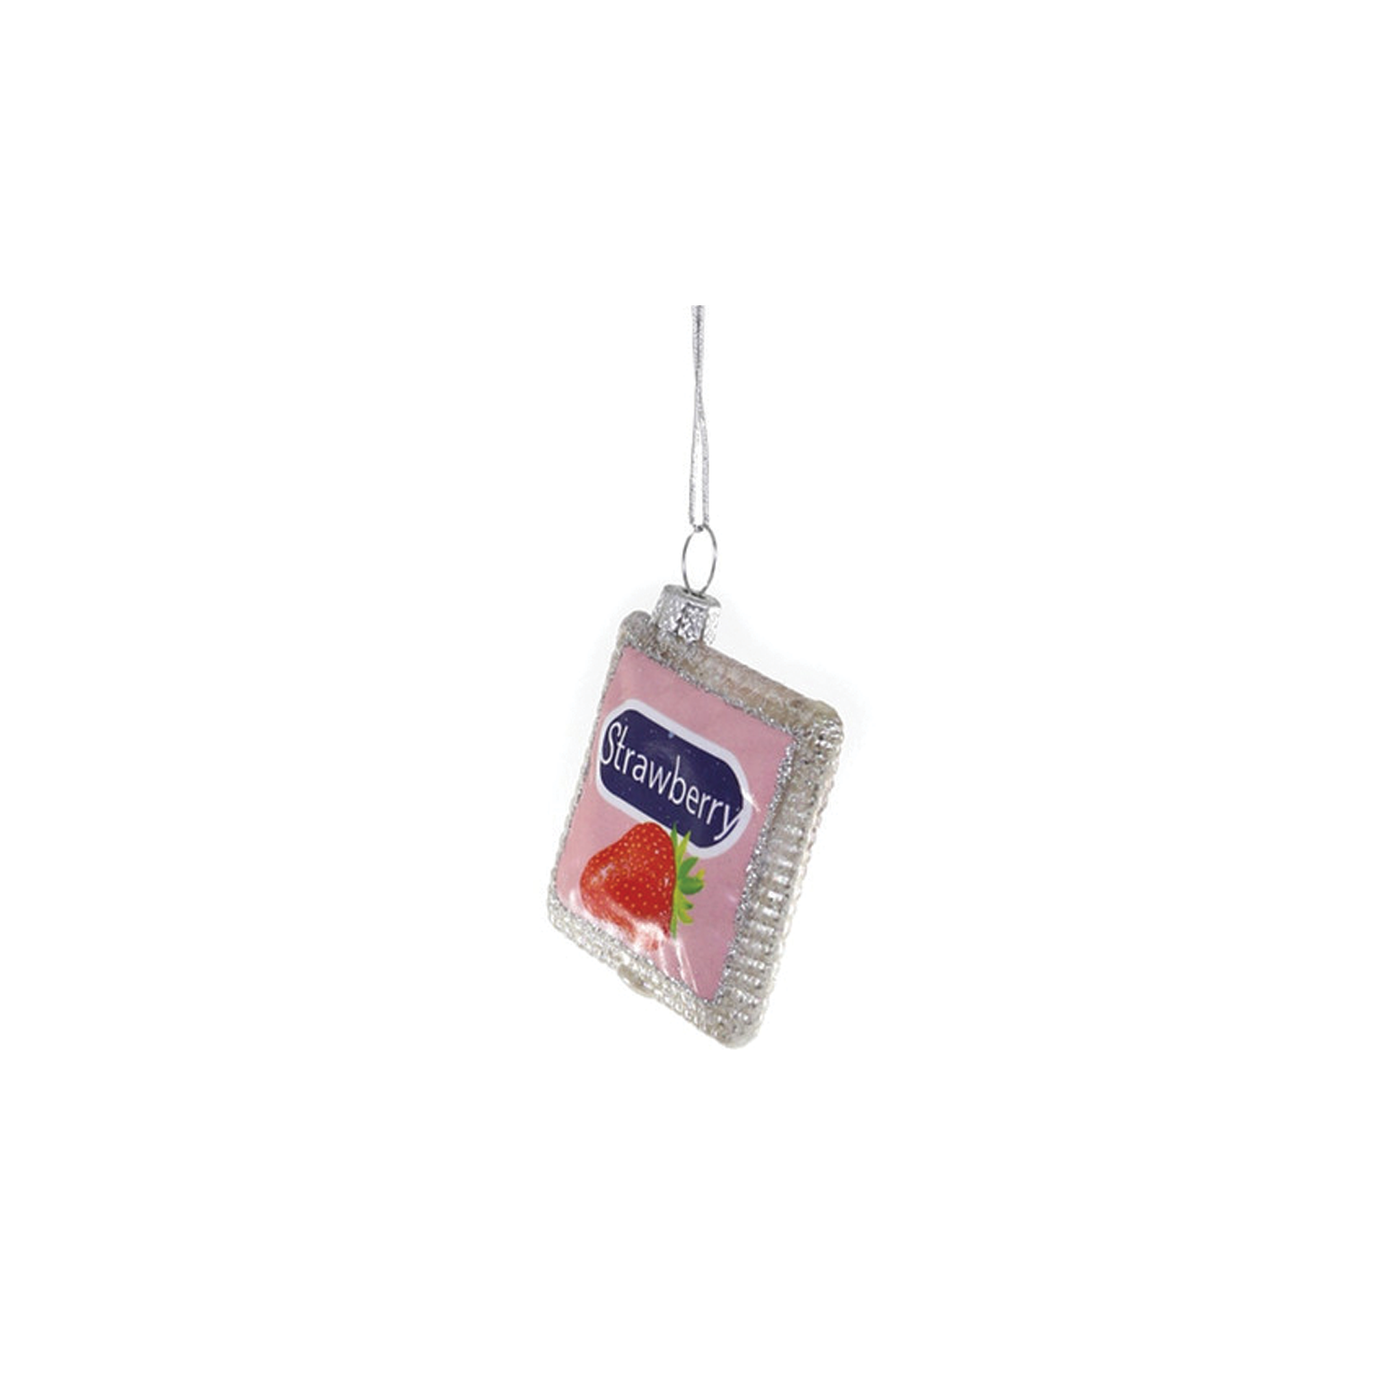 Flavored Condom Ornament - Strawberry